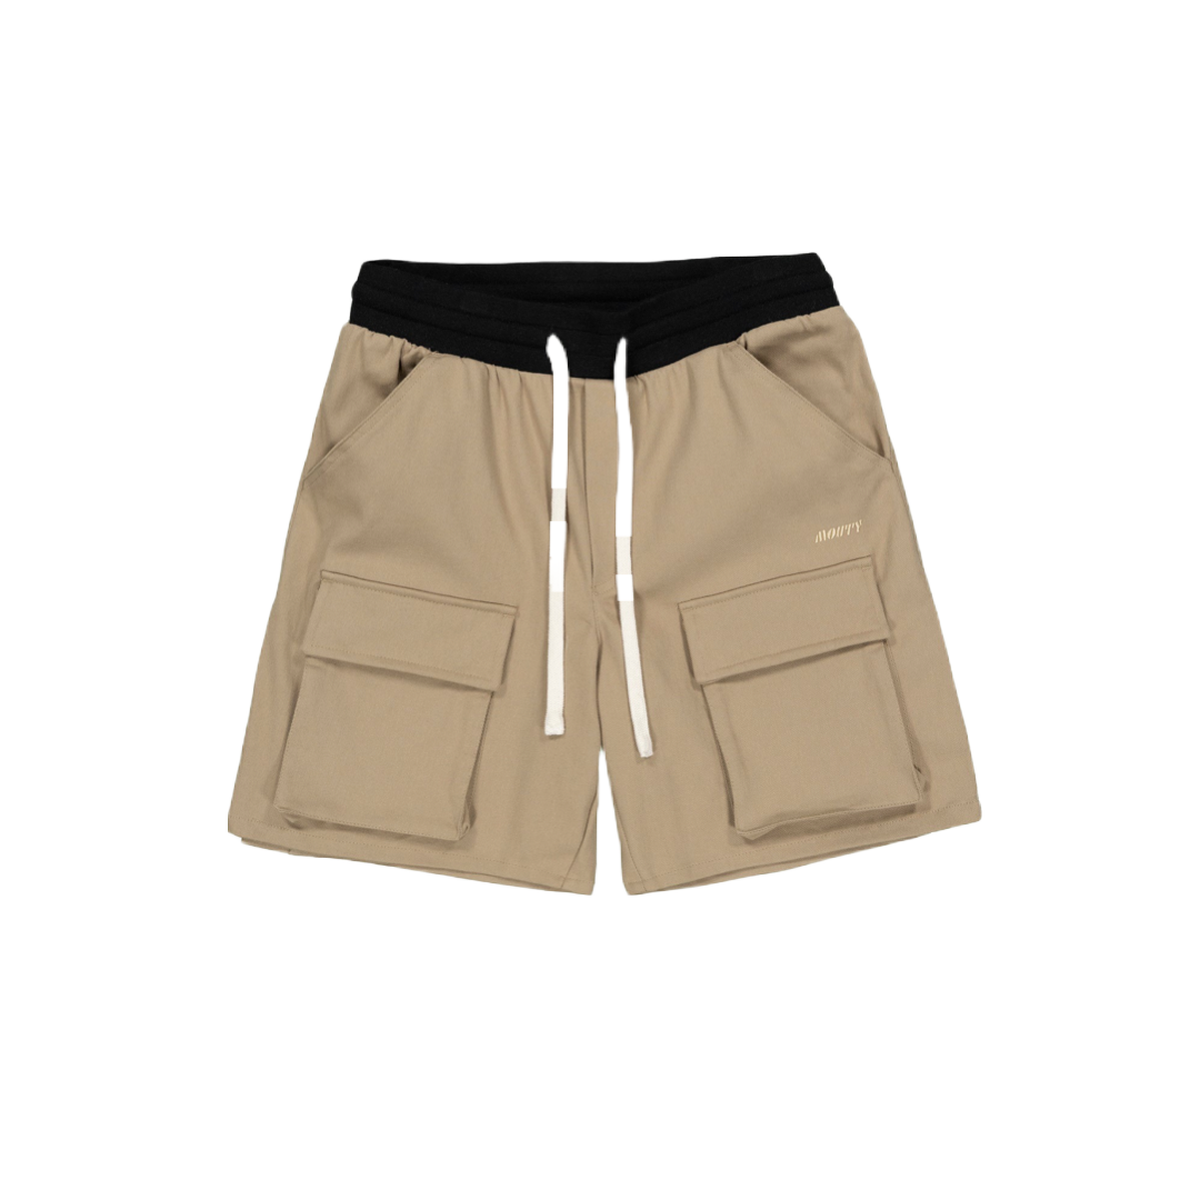 Mouty Beige Cargo Shorts Pants